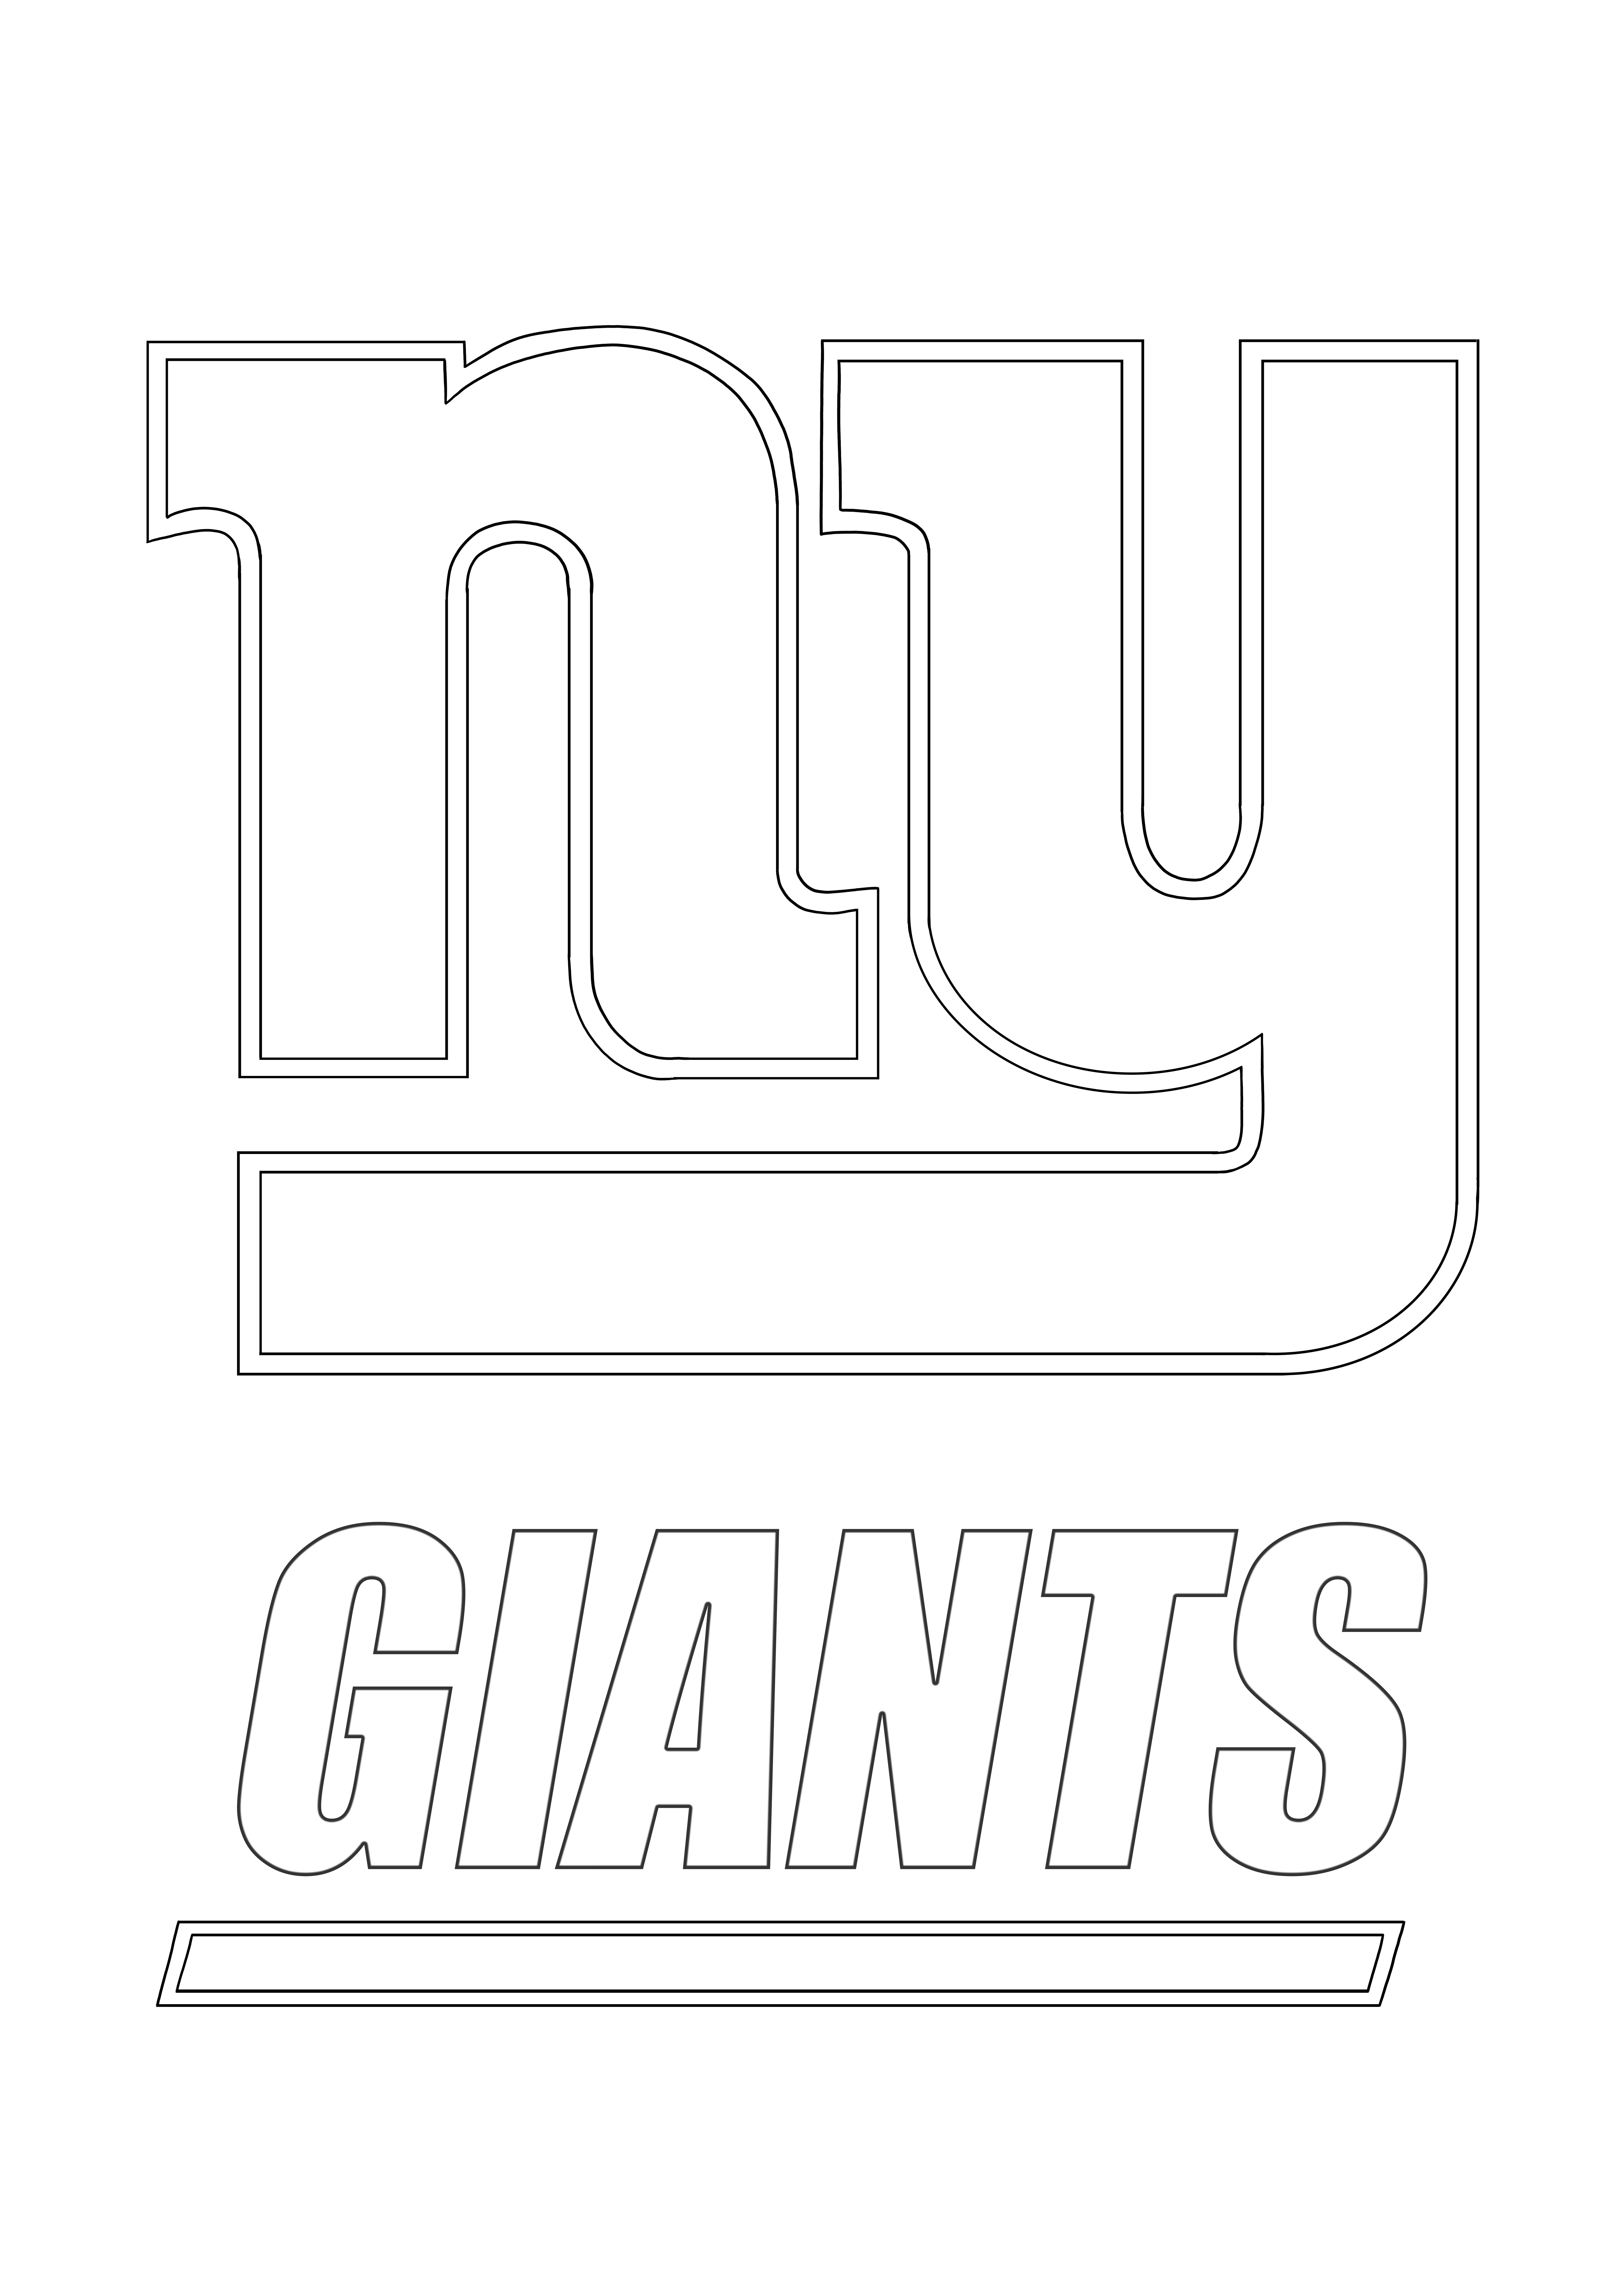 Pewarnaan gratis Logo New York Giants Favorit dan lembar cetak gratis